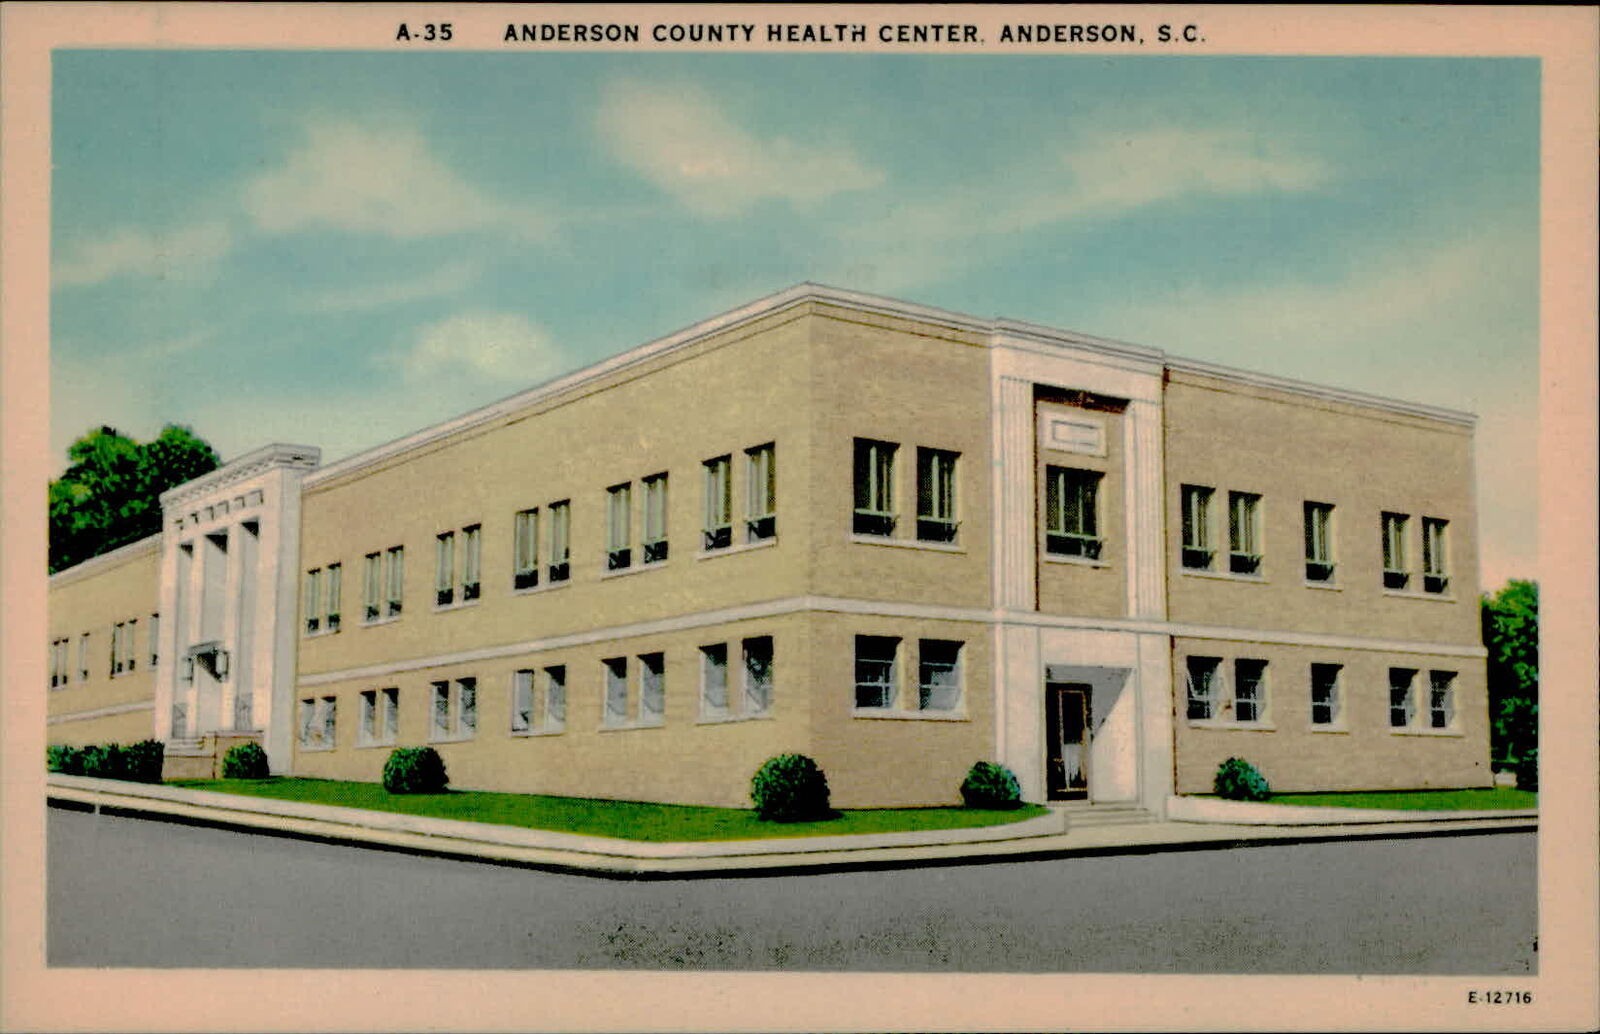 Postcard: A-35 ANDERSON COUNTY HEALTH CENTER, ANDERSON, S.C. 11 E-1275